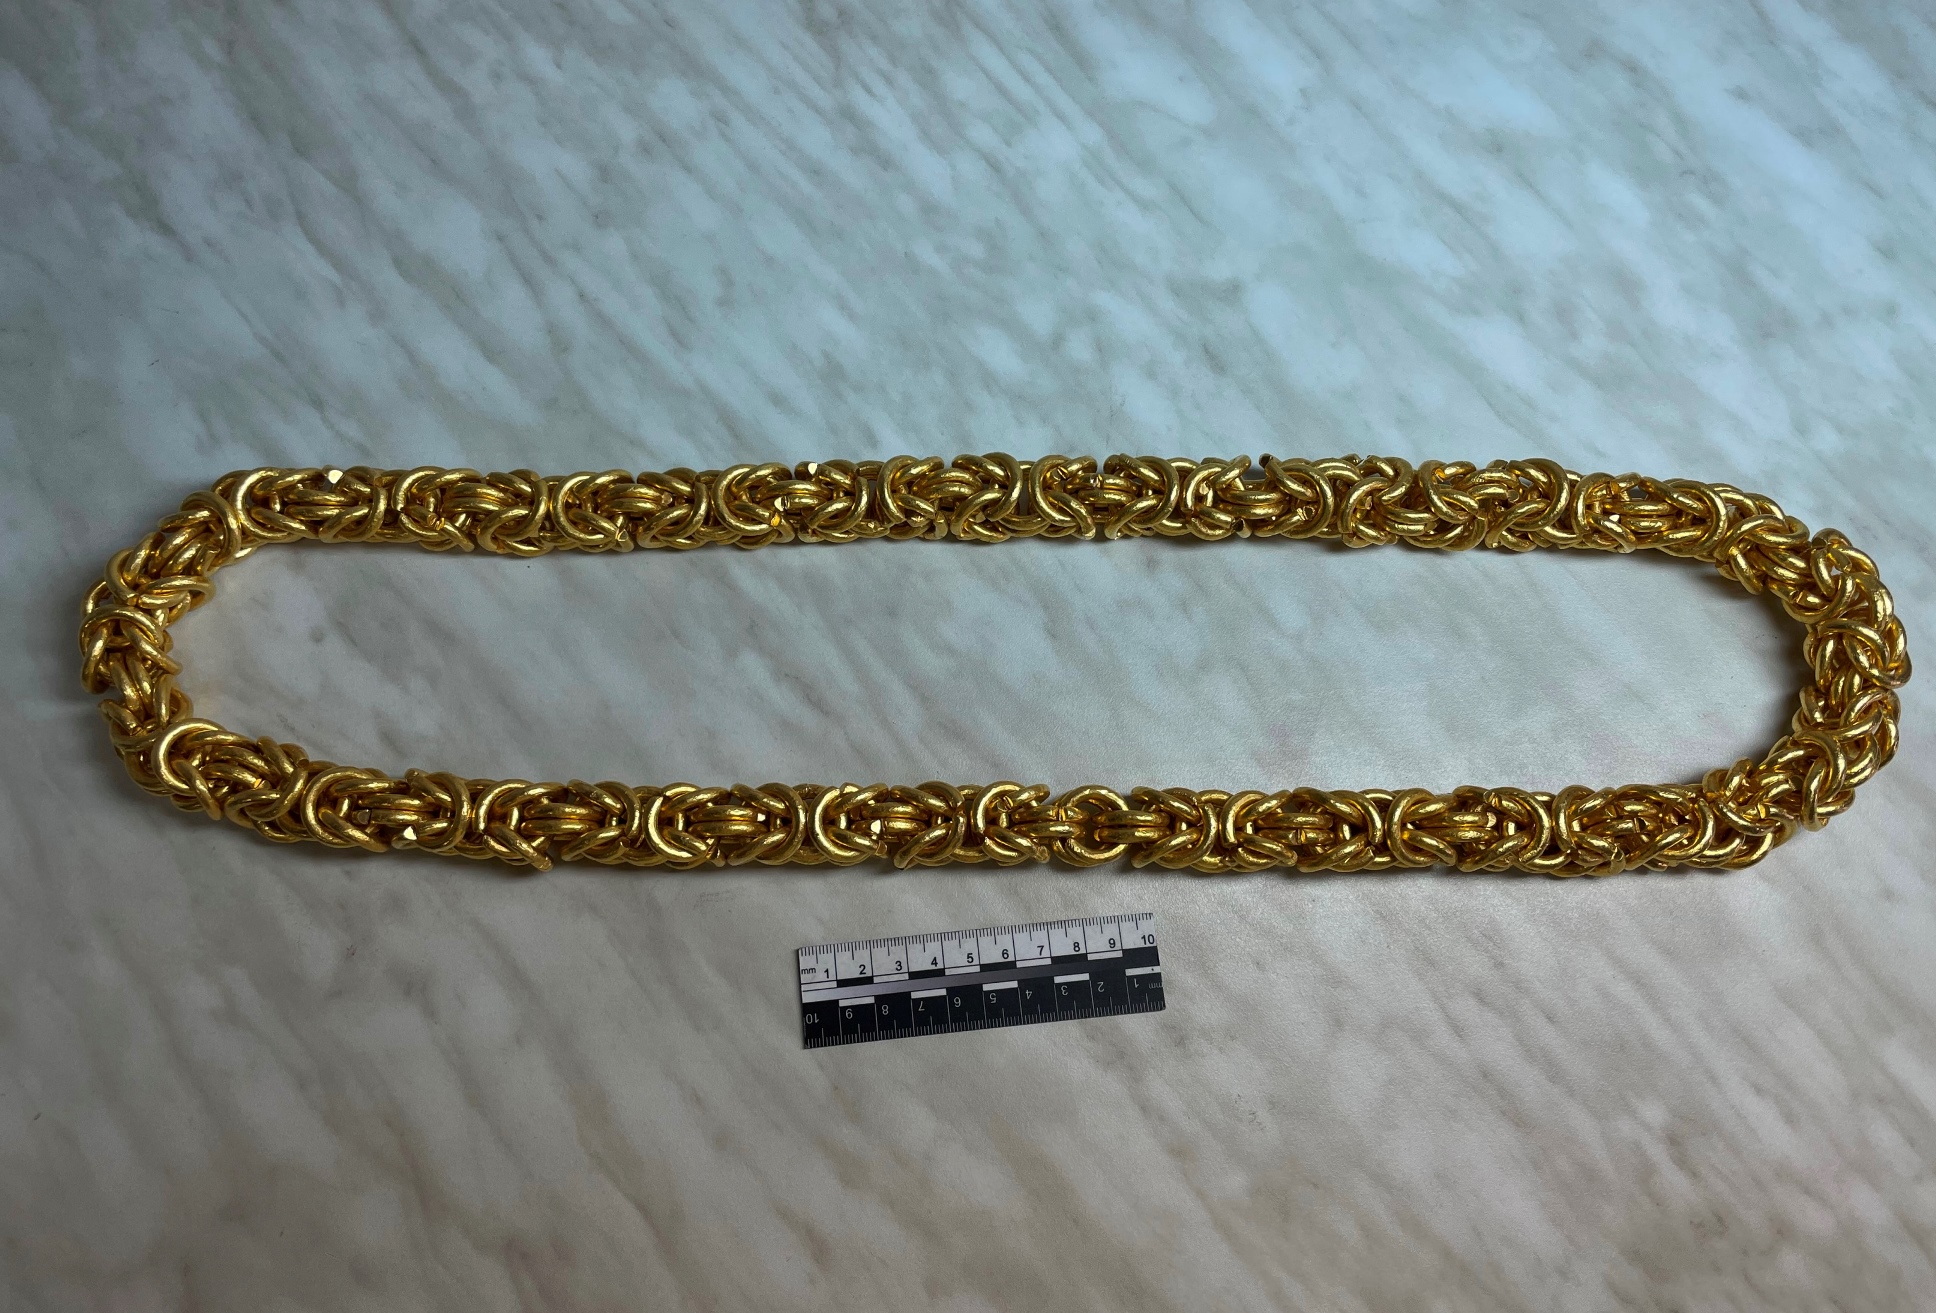 Золотая цепь, найденная в багаже. Фото © Федеральная таможенная служба